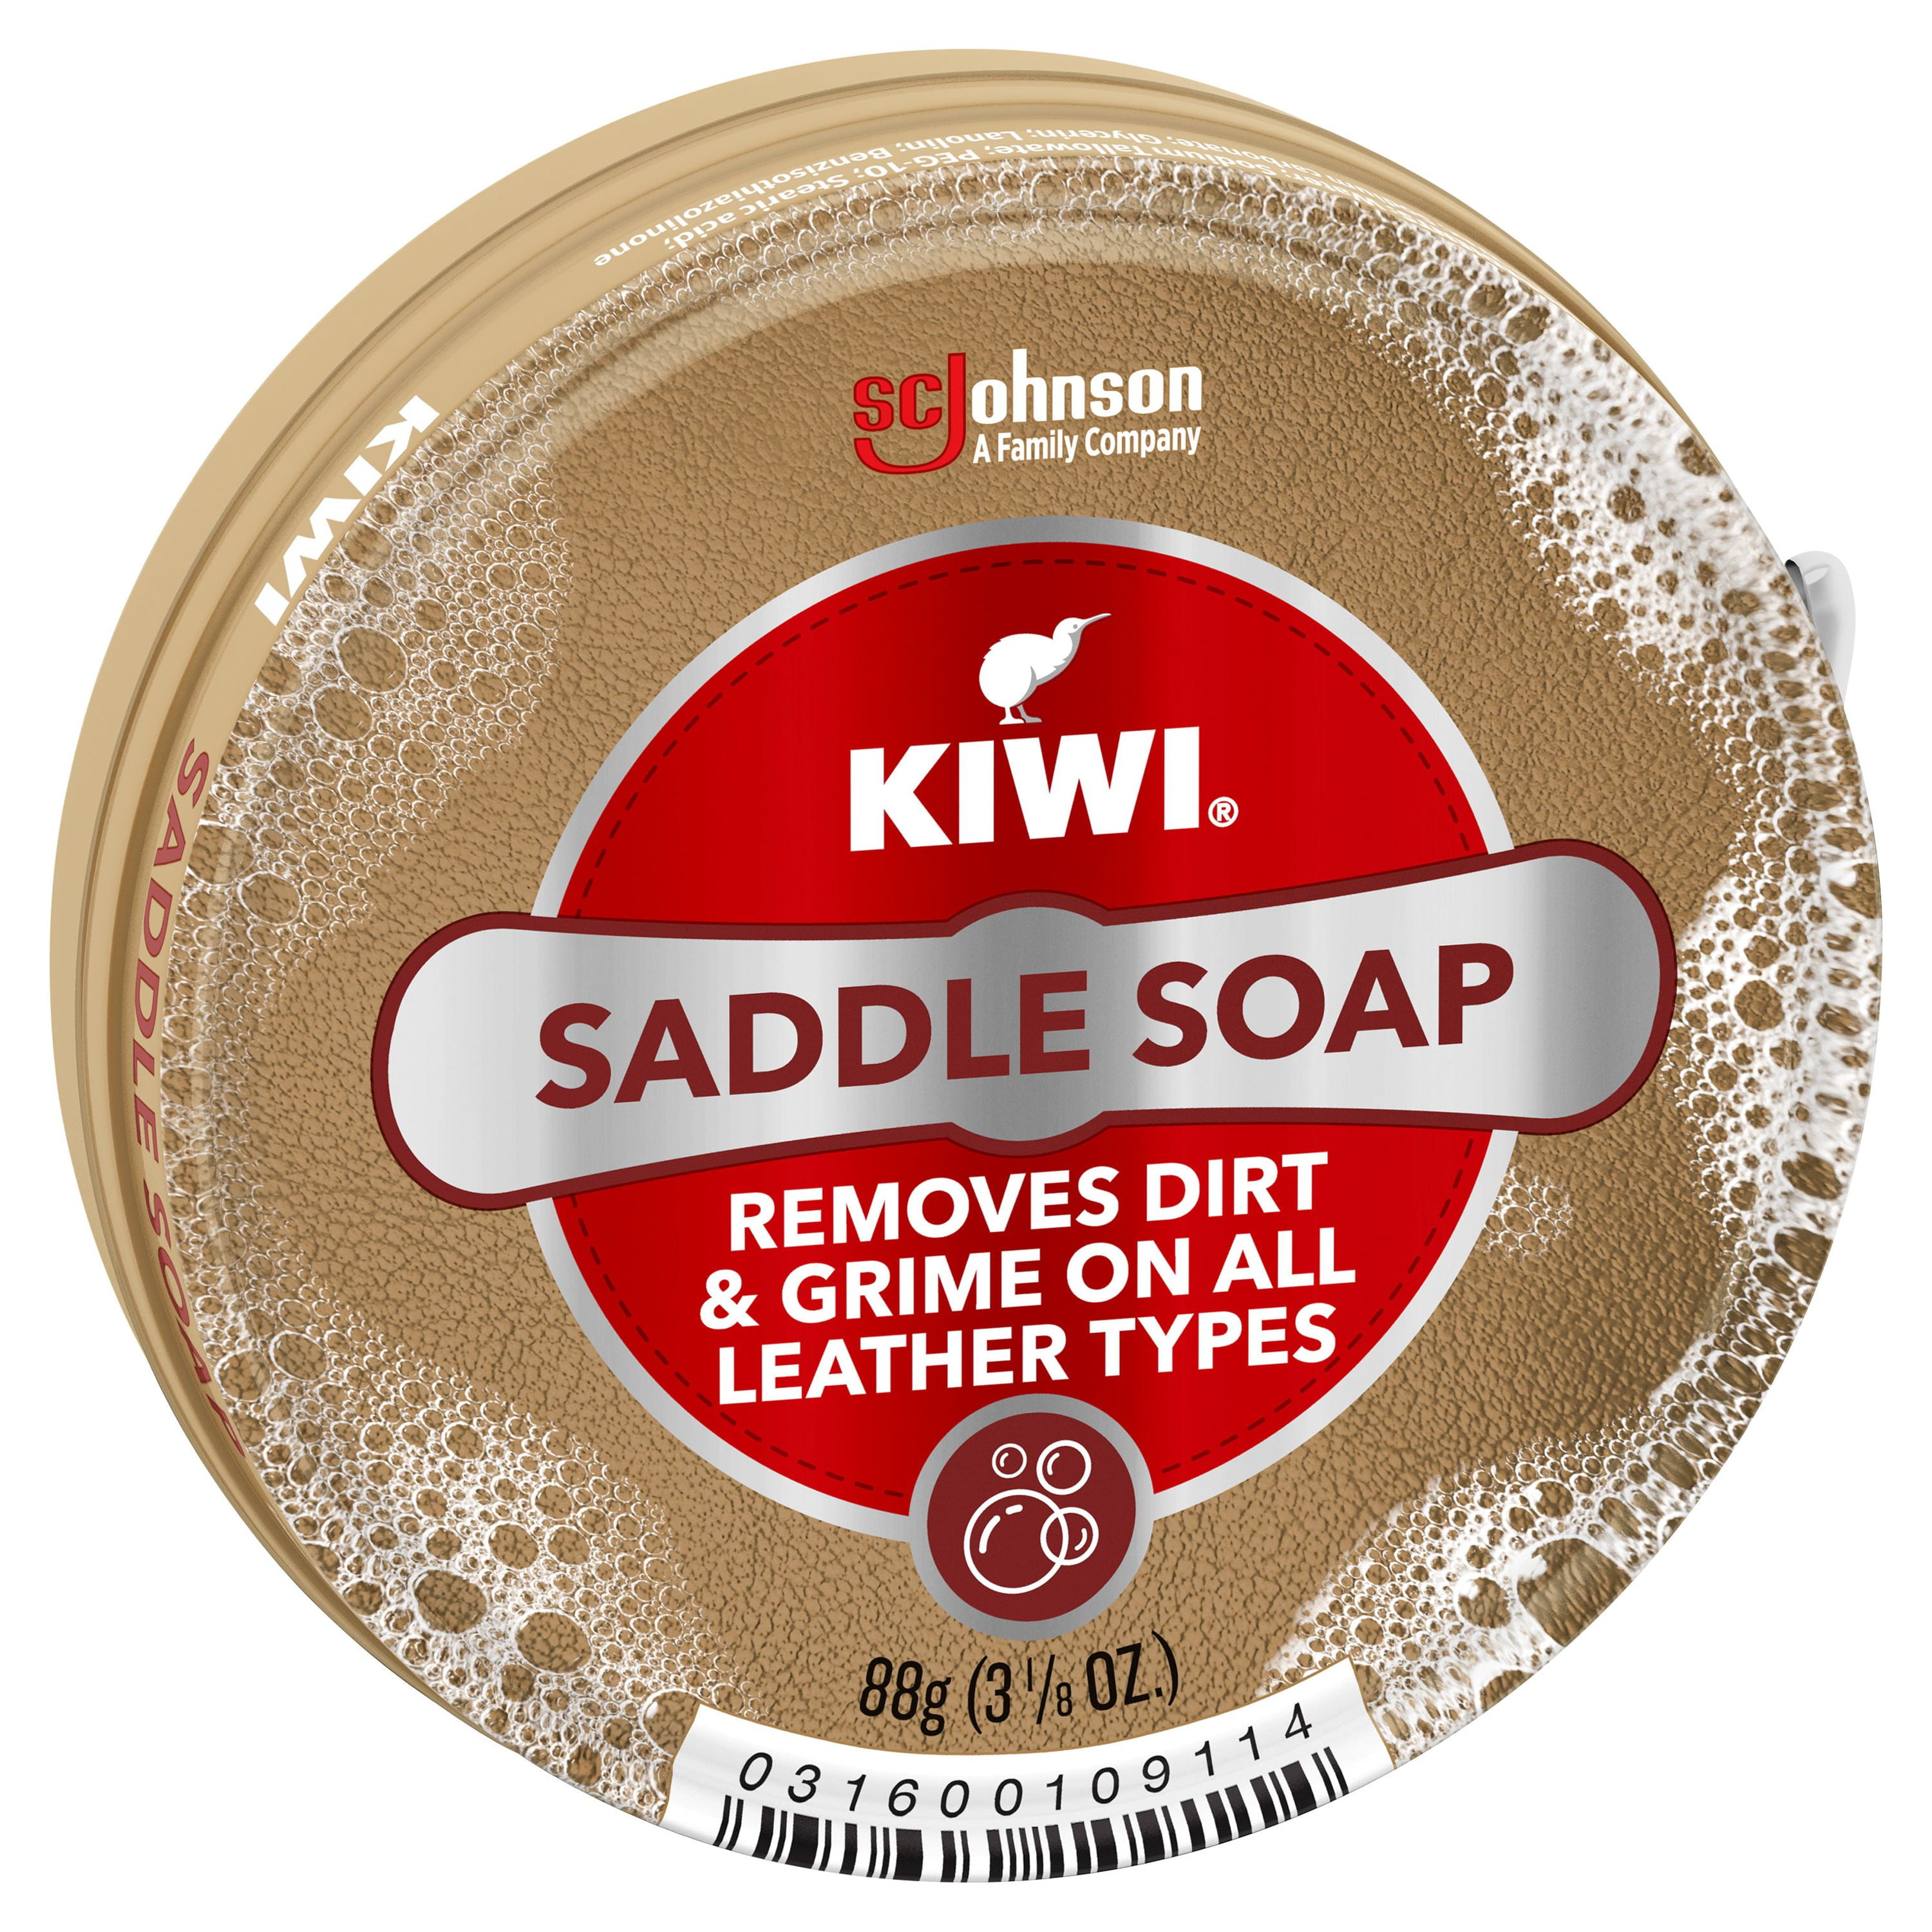 KIWI SADDLE SOAP & LEATHER CARE Jumbo 3 1/8 oz (88g) cans 31600109114